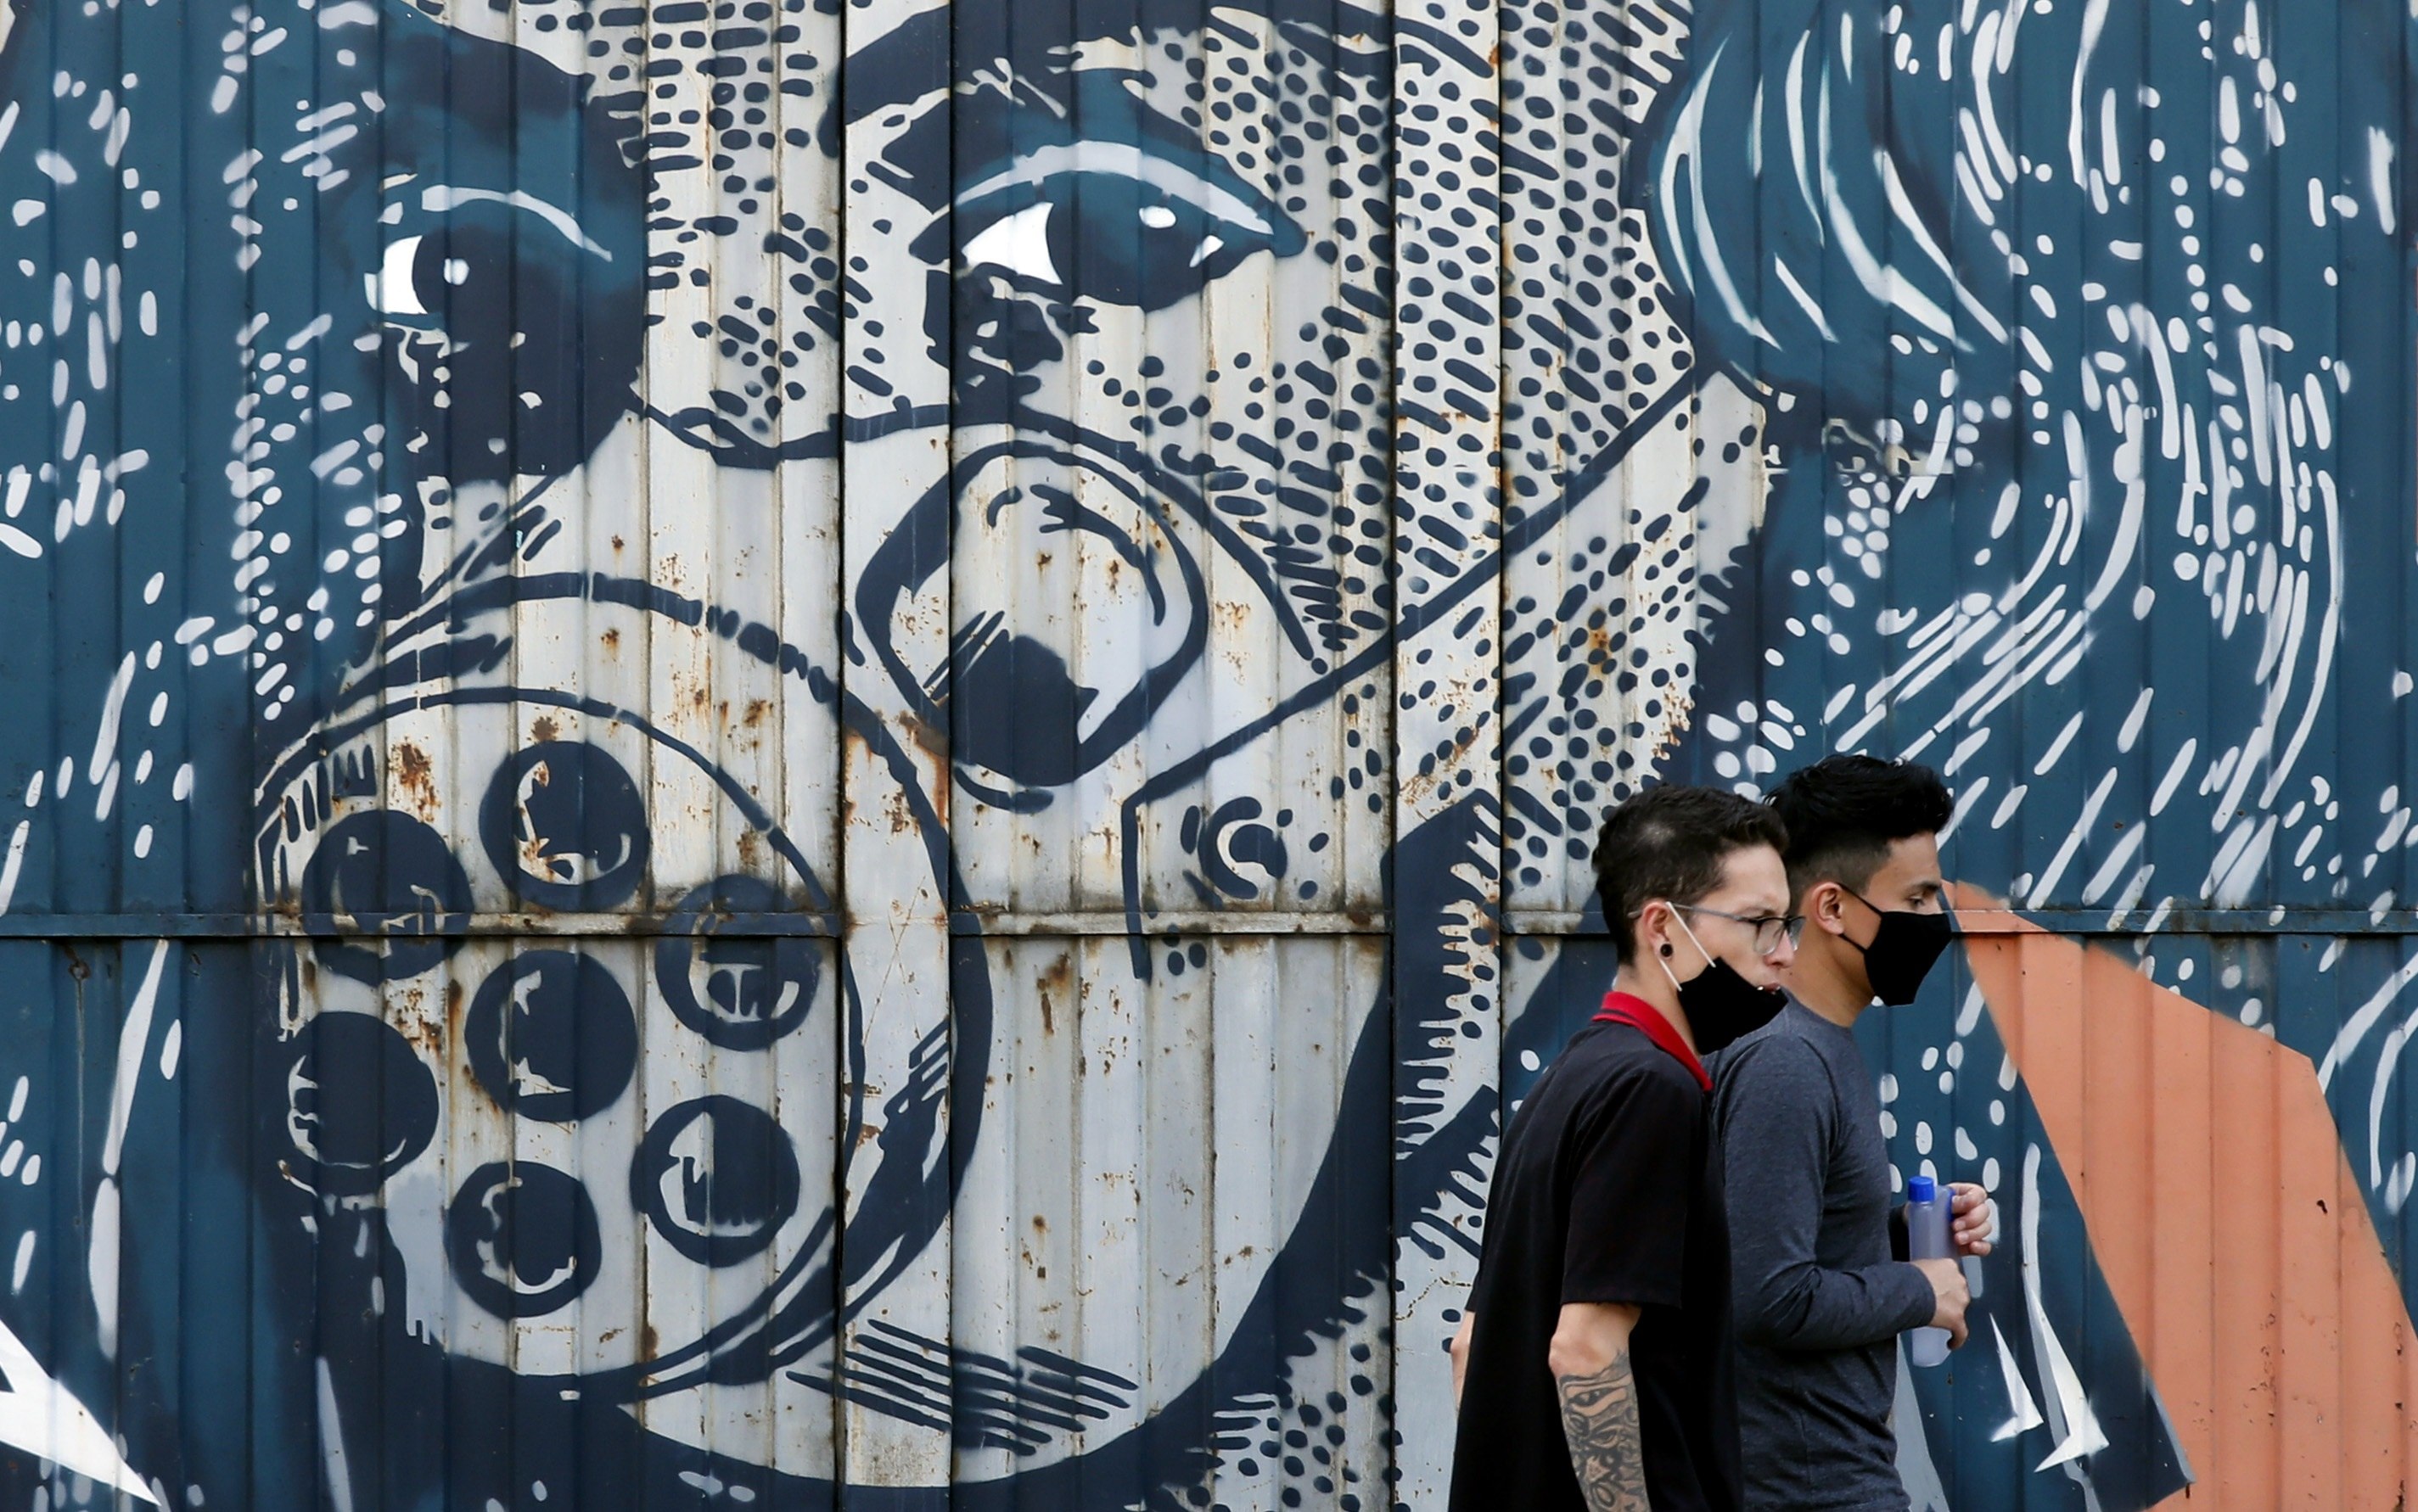 Personas usan tapabocas mientras pasan frente a un graffiti en la zona industrial, este miércoles en Bogotá, Colombia. (Foto Prensa Libre: EFE)